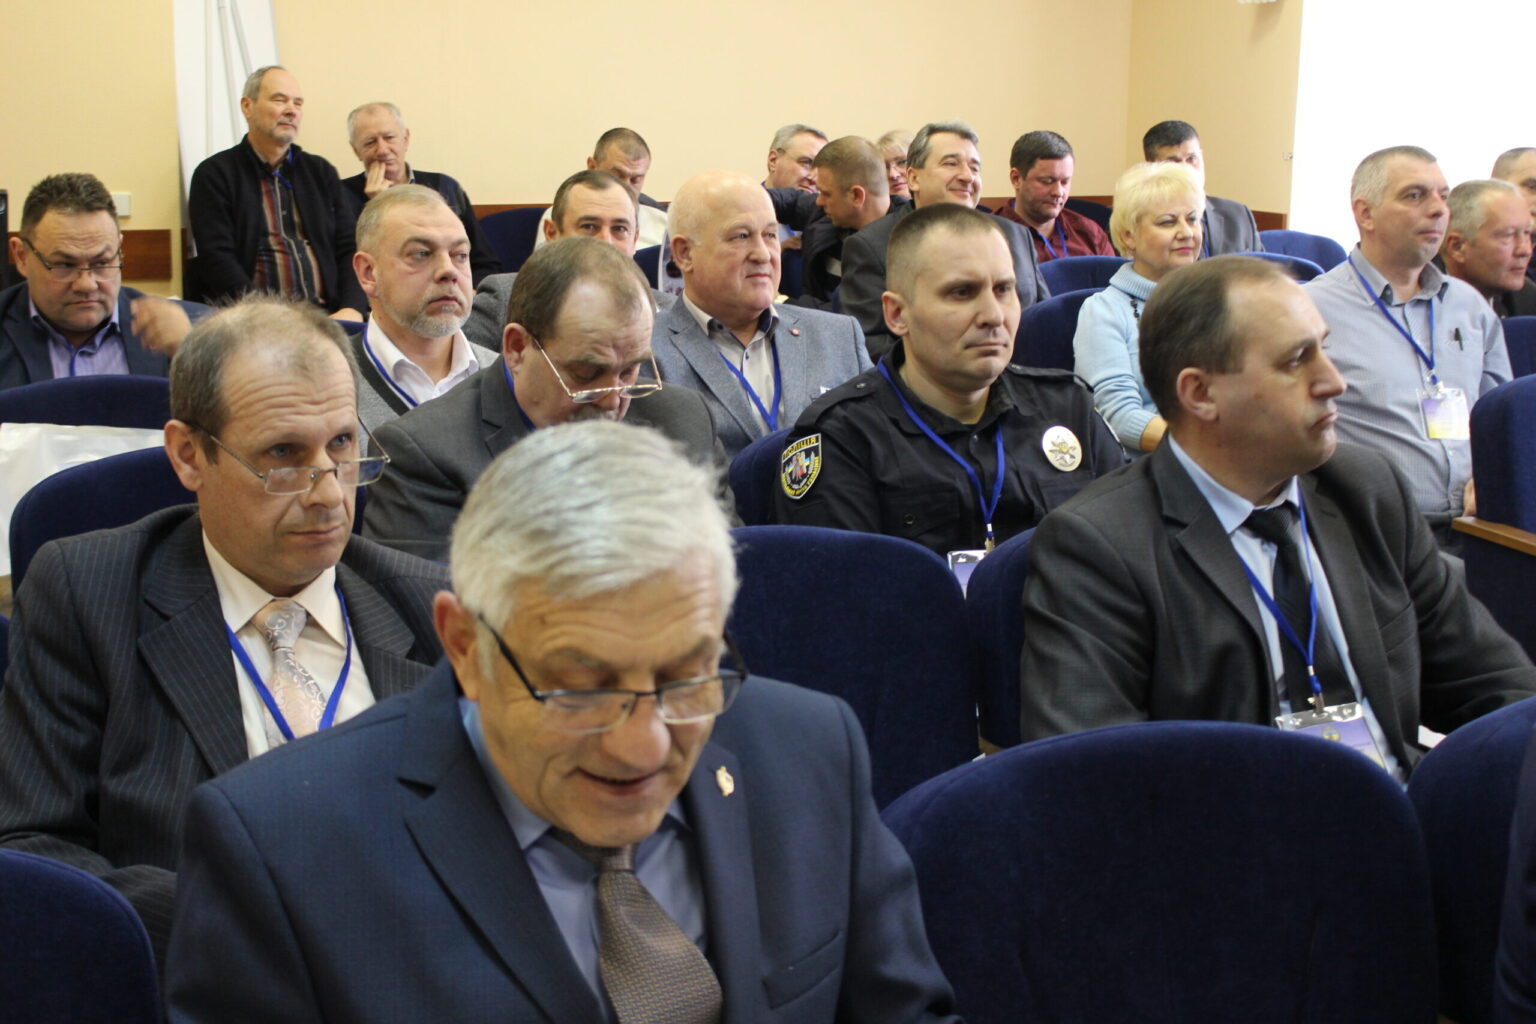 На базі Київського НДІСЕ відбулась Конференція Громадської організації «Всеукраїнська асоціація вибухотехніків»